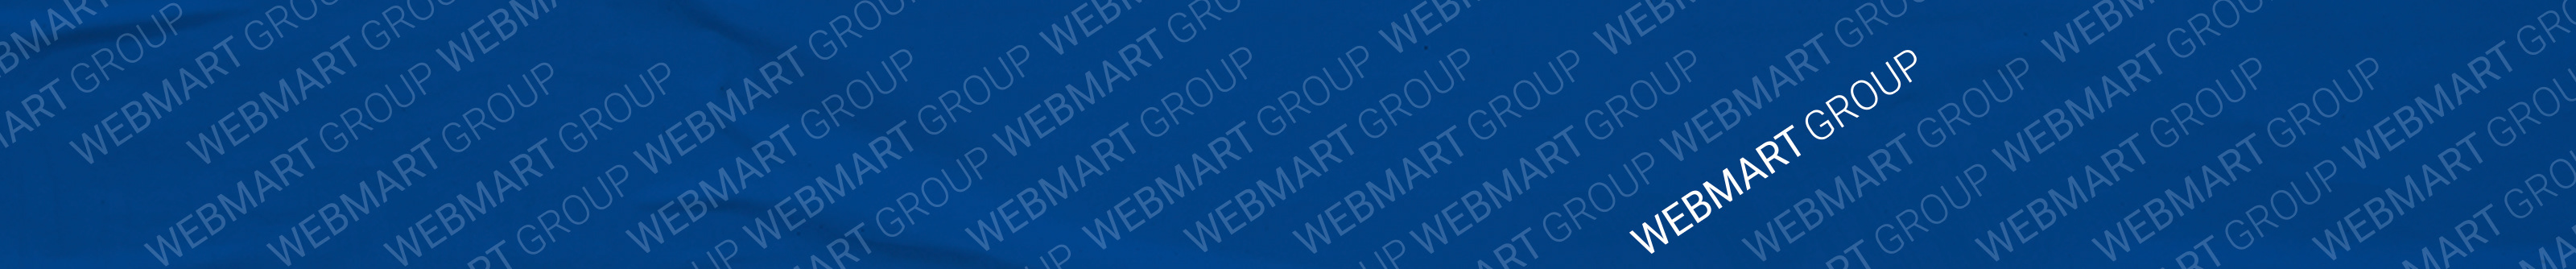 Webmart Group's profile banner